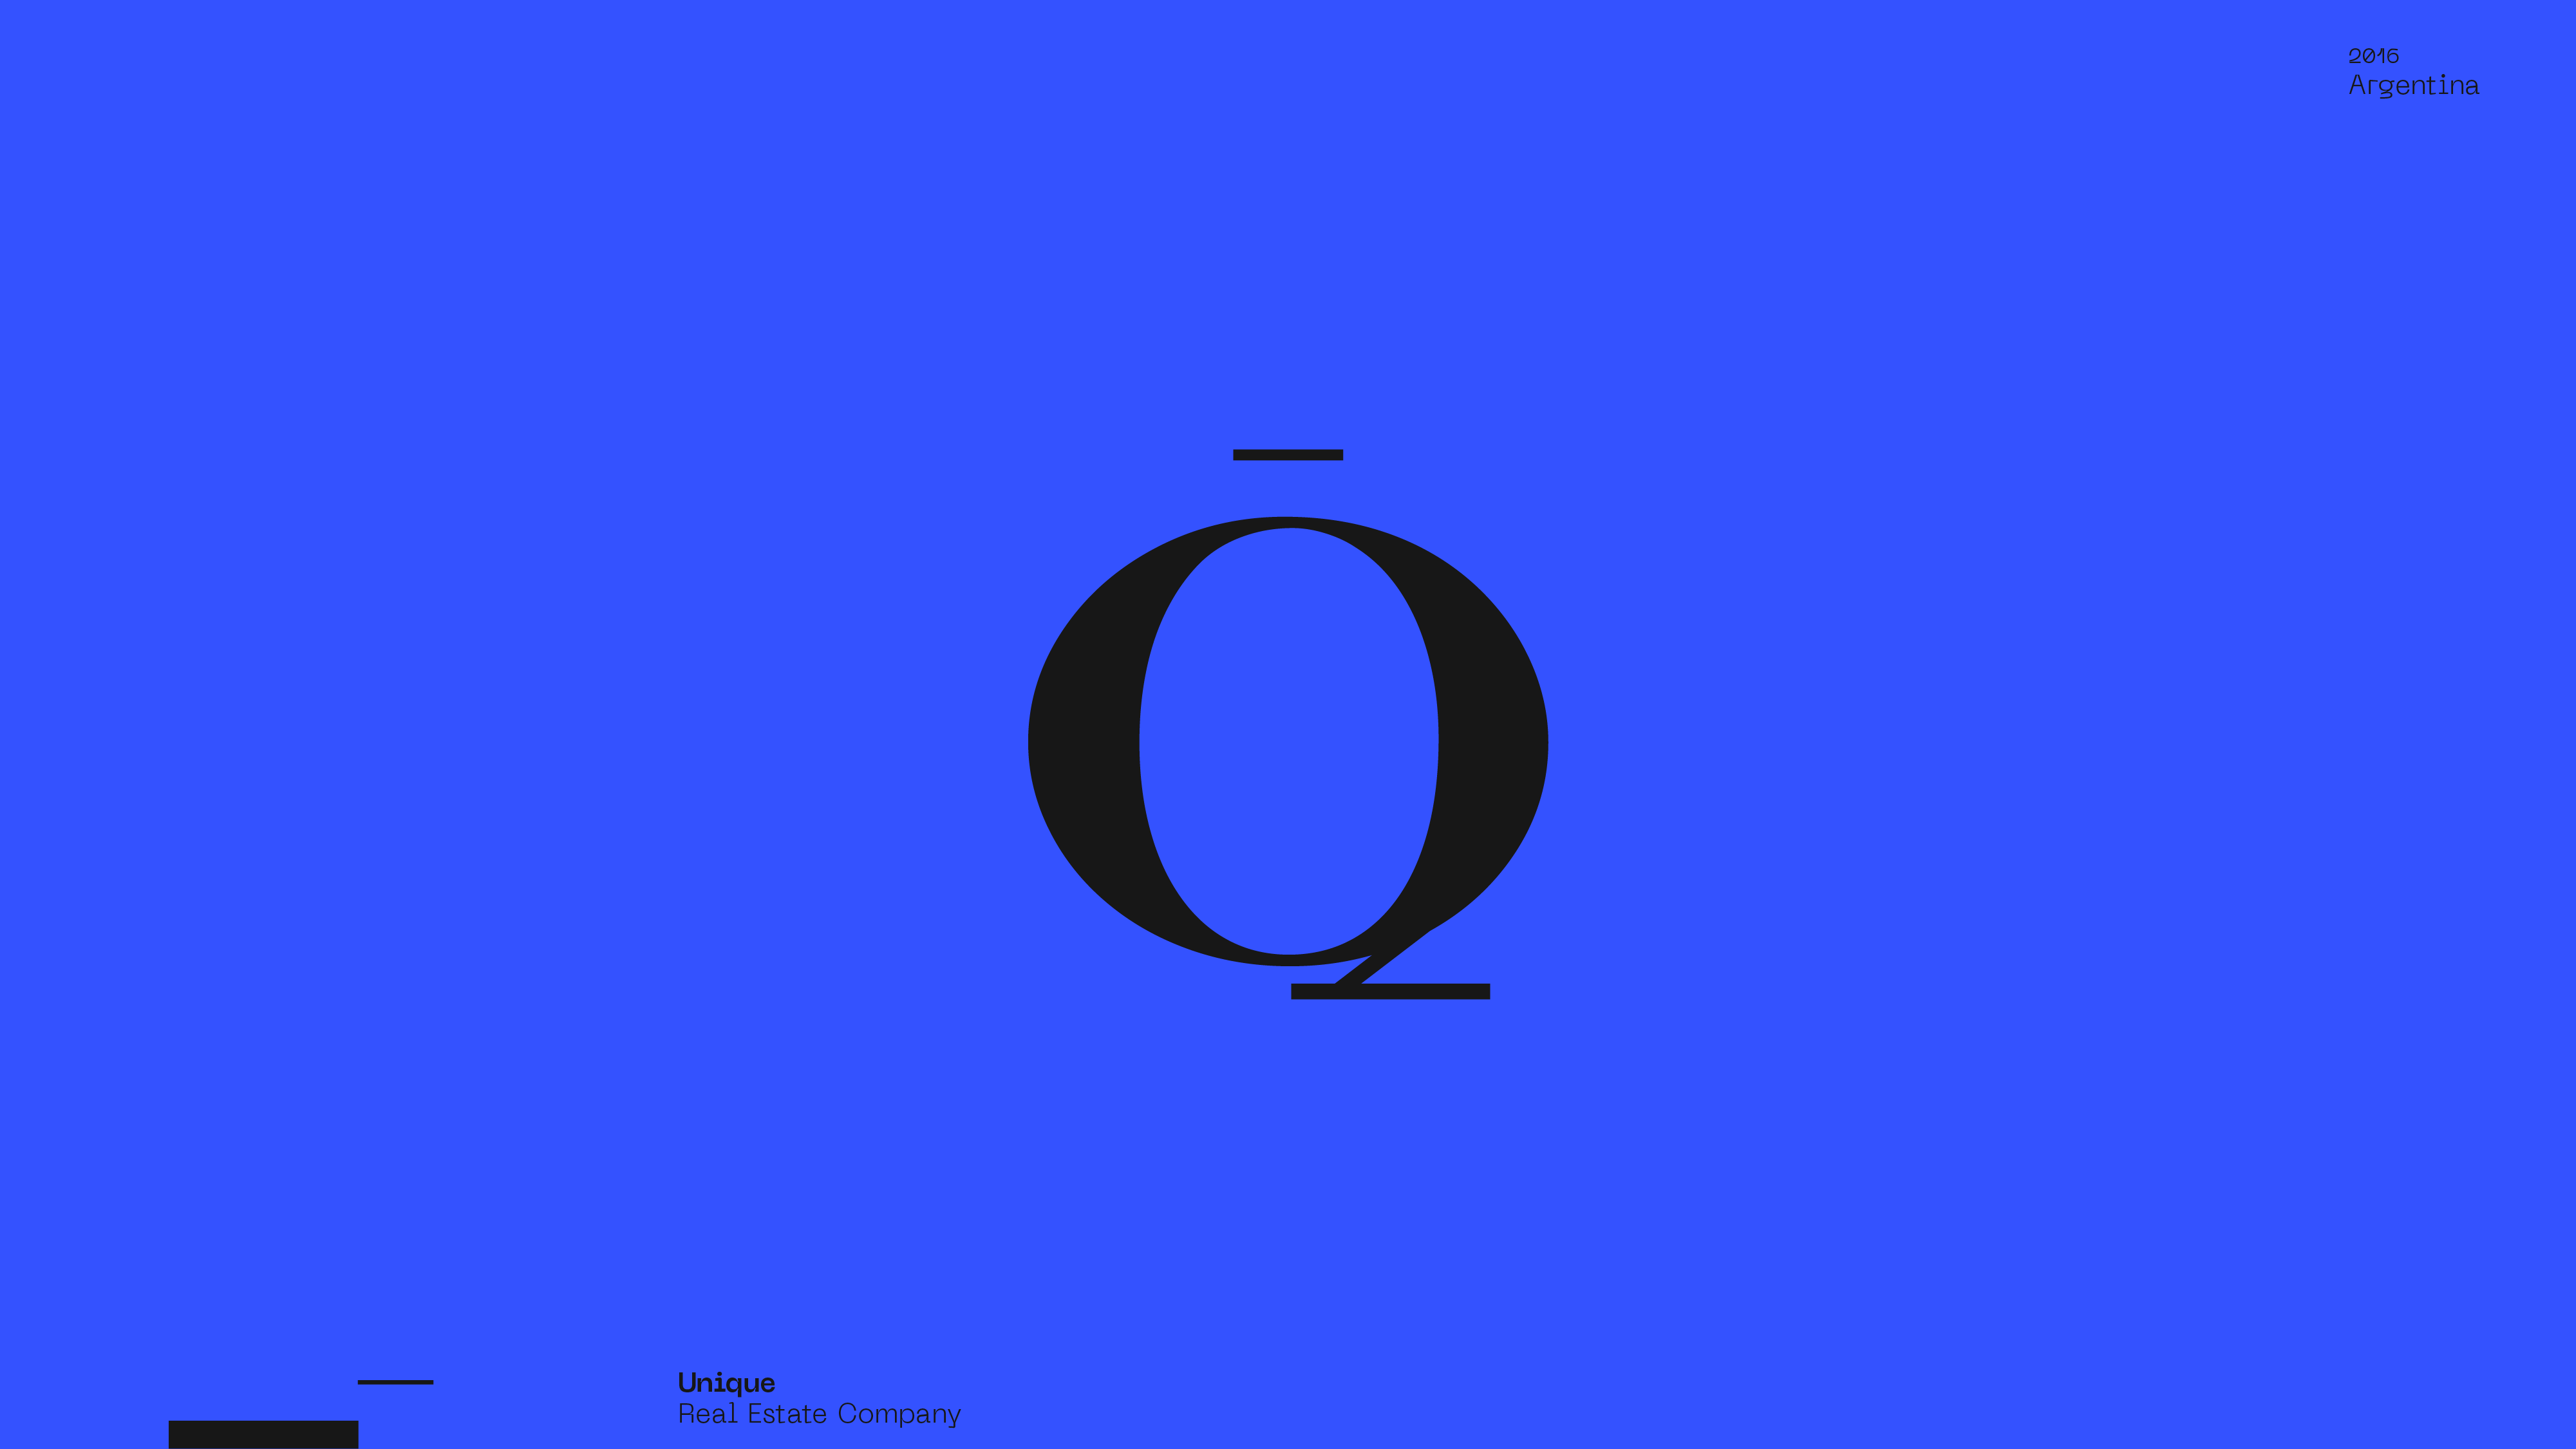 Guapo Design Studio by Esteban Ibarra Logofolio — Unique